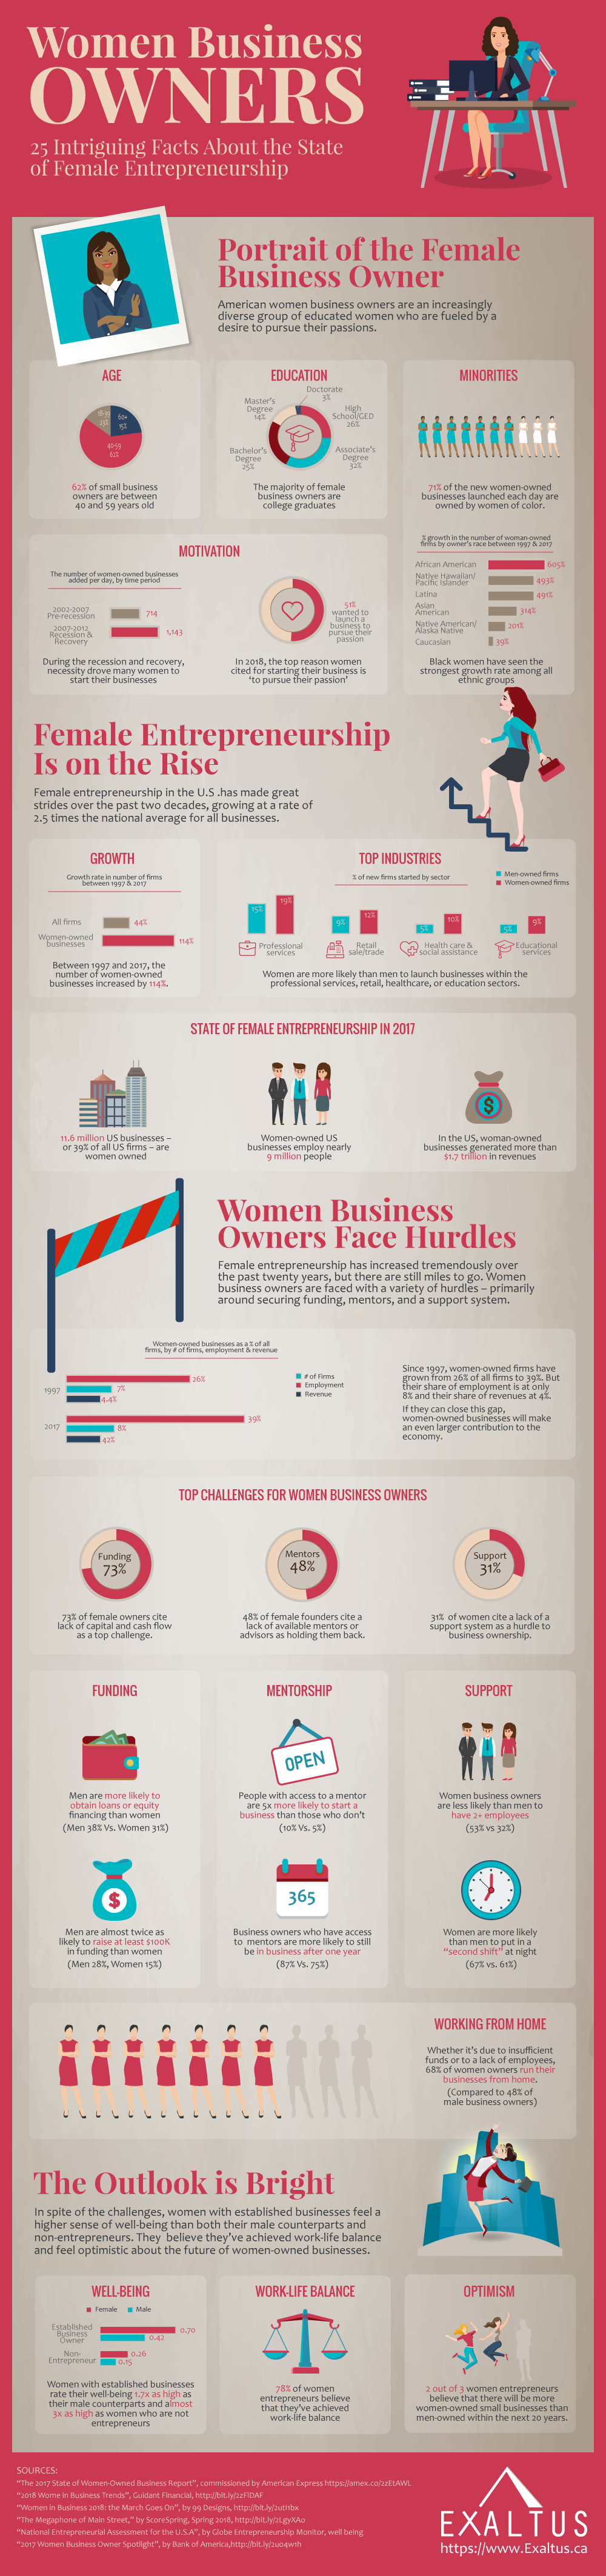 infographic-female-entreptreneurship